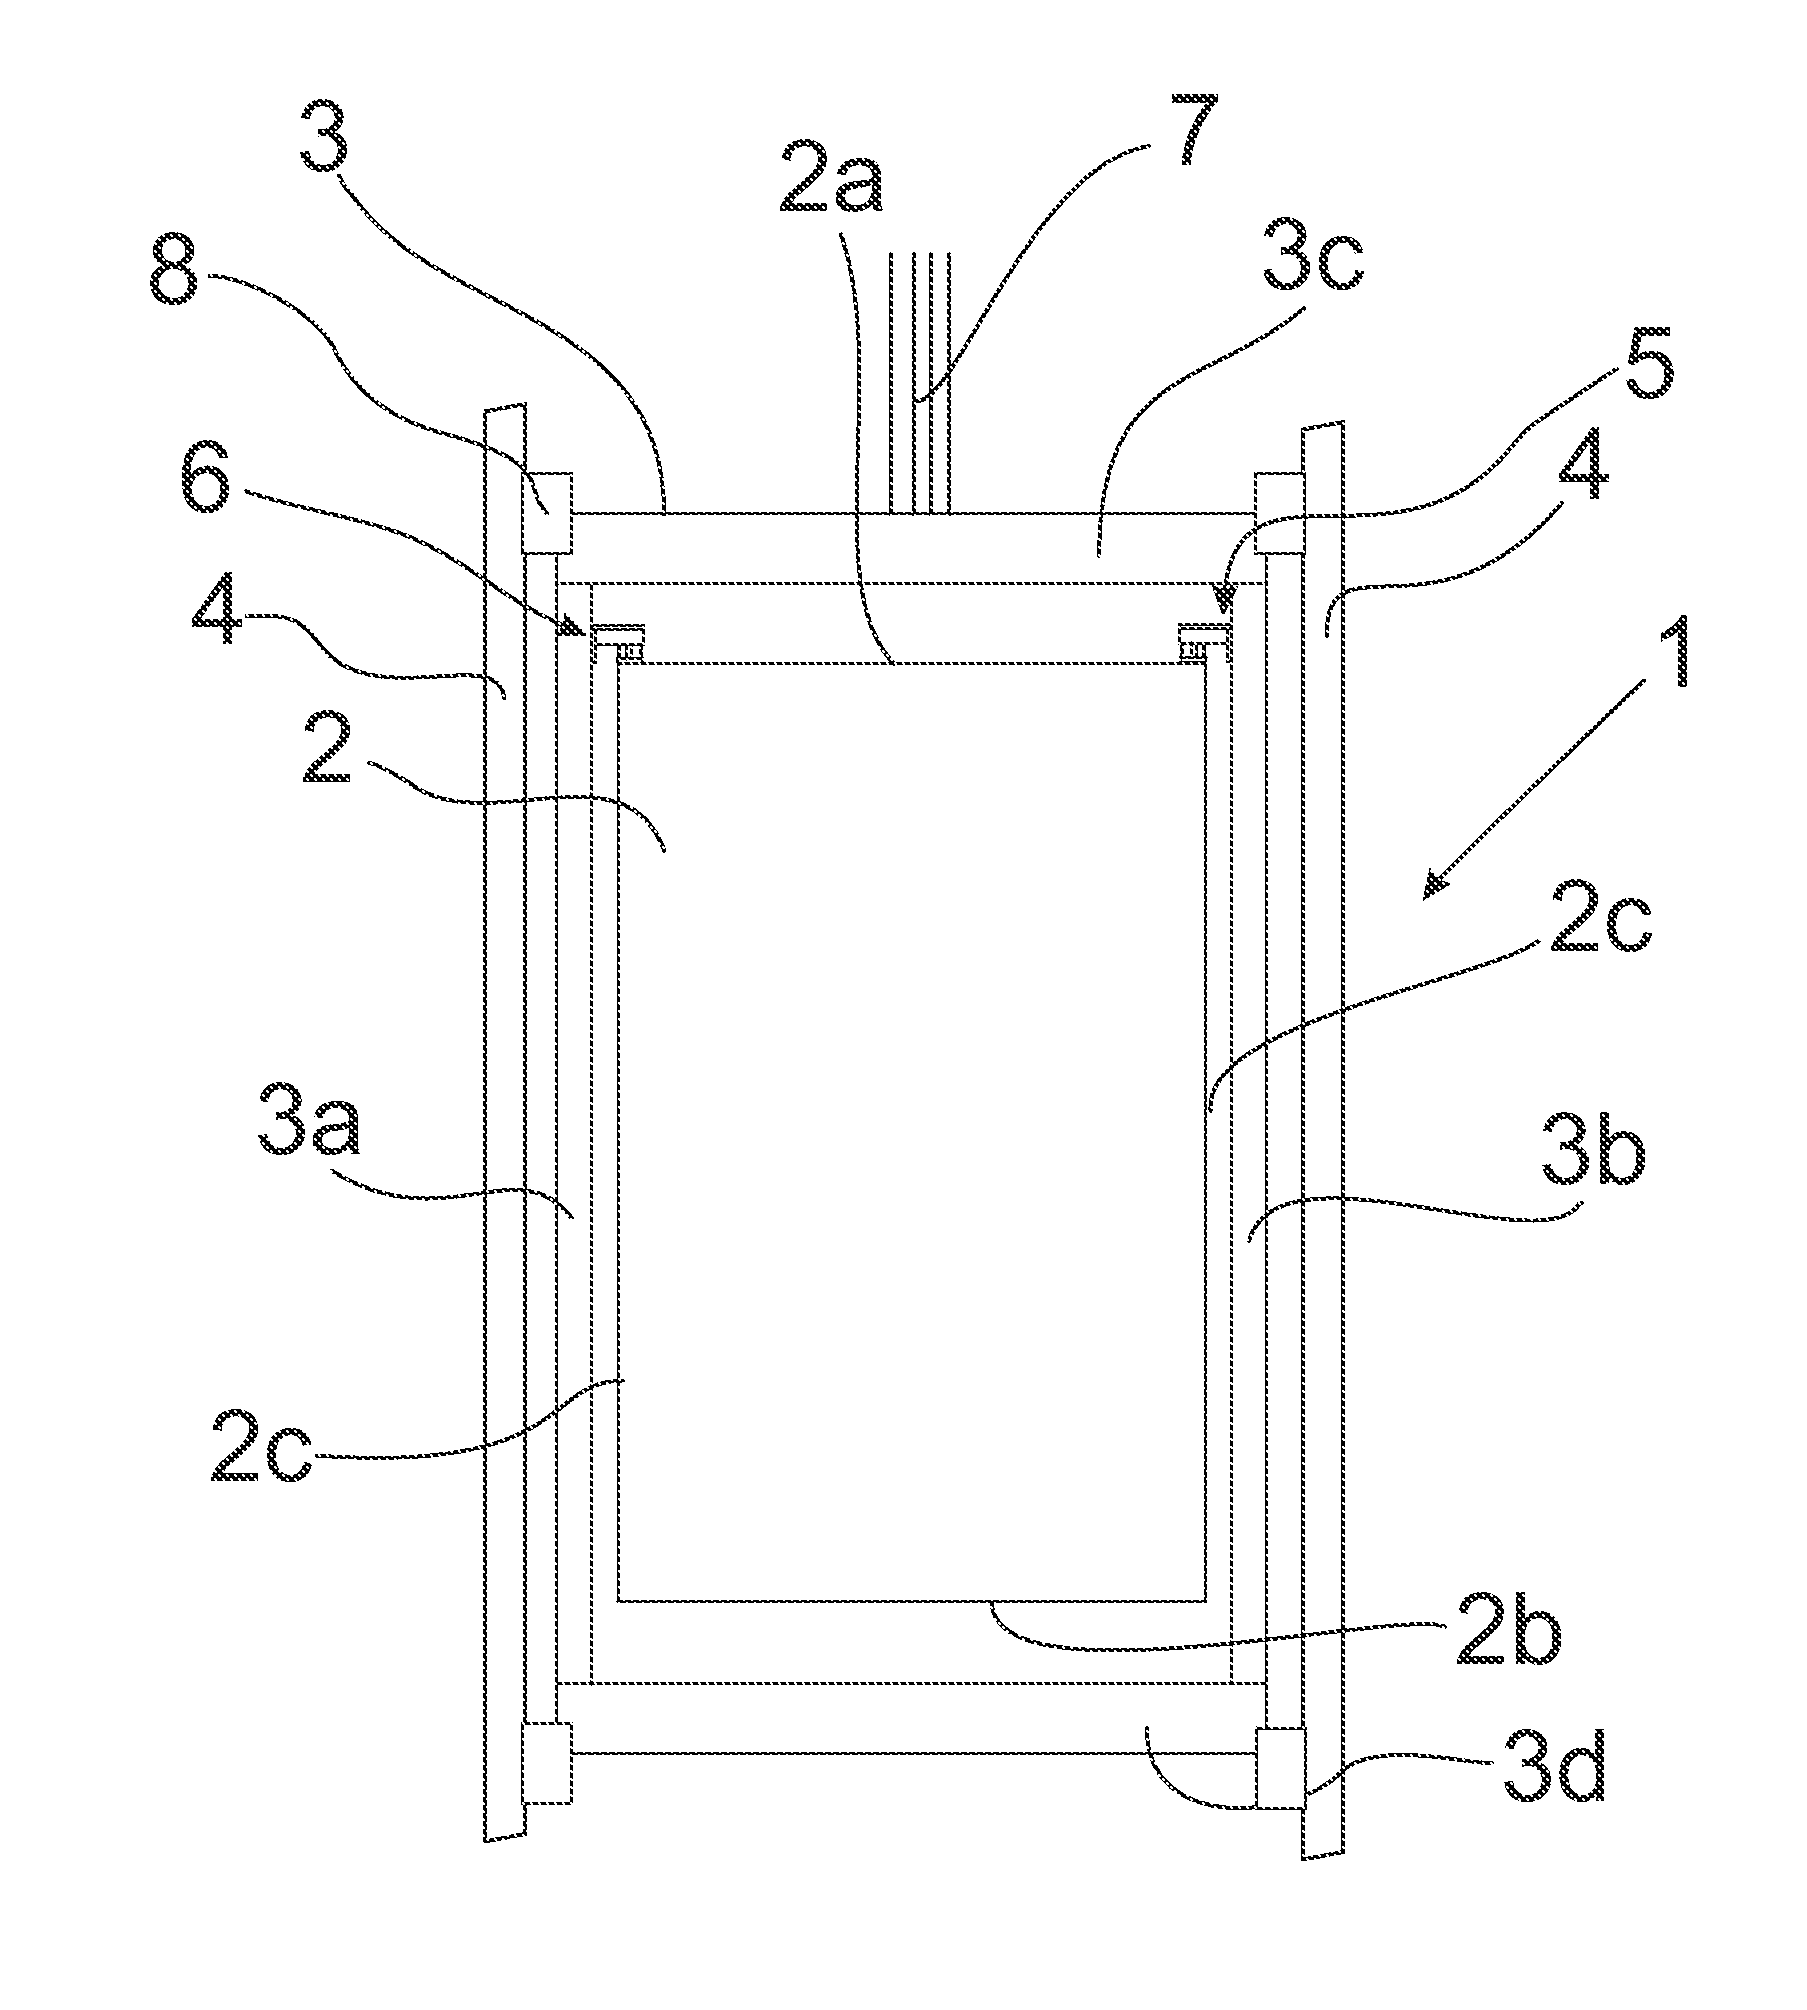 Elevator car arrangement and a connection element